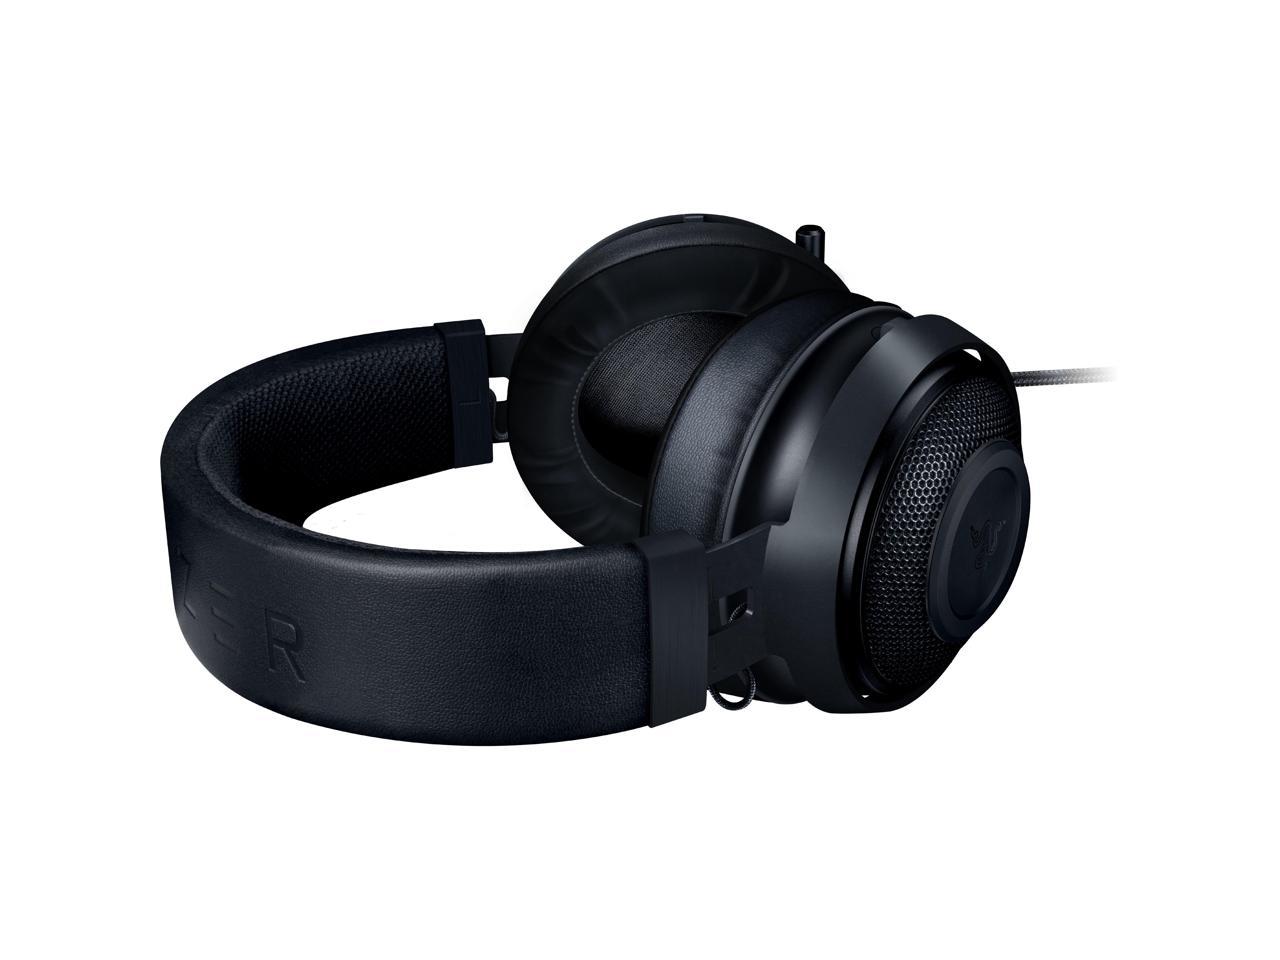 Razer Kraken Multi-Platform Wired Gaming Headset - Black